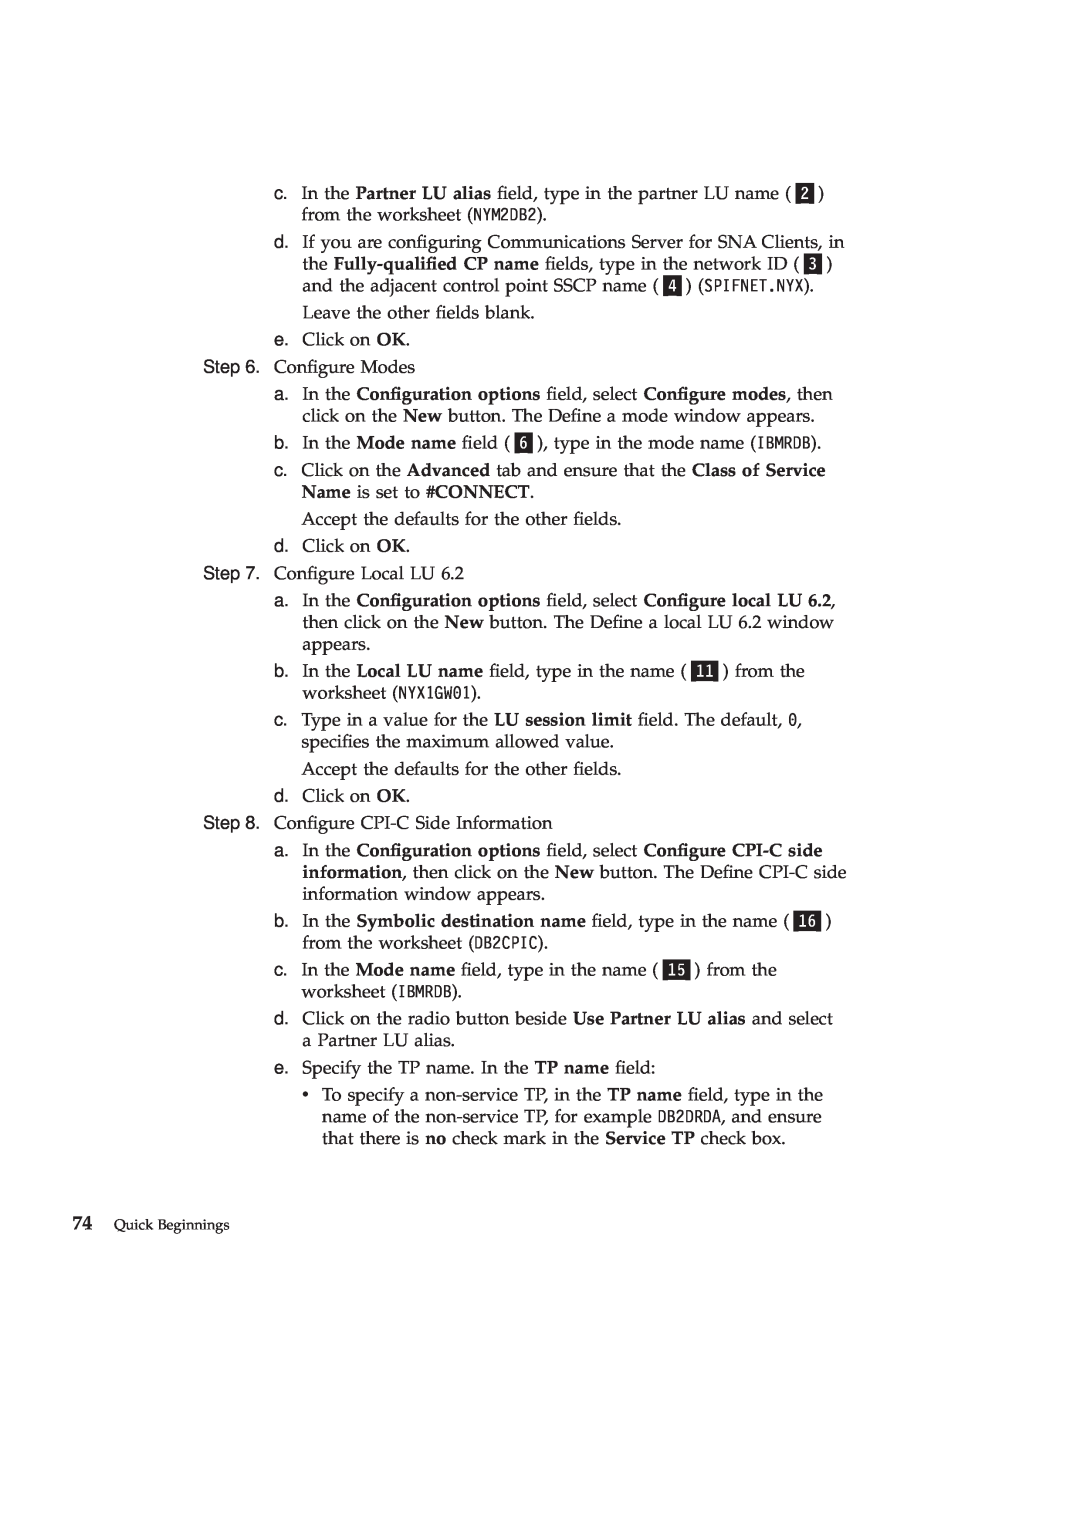 IBM GC09-2830-00 manual Quick Beginnings 